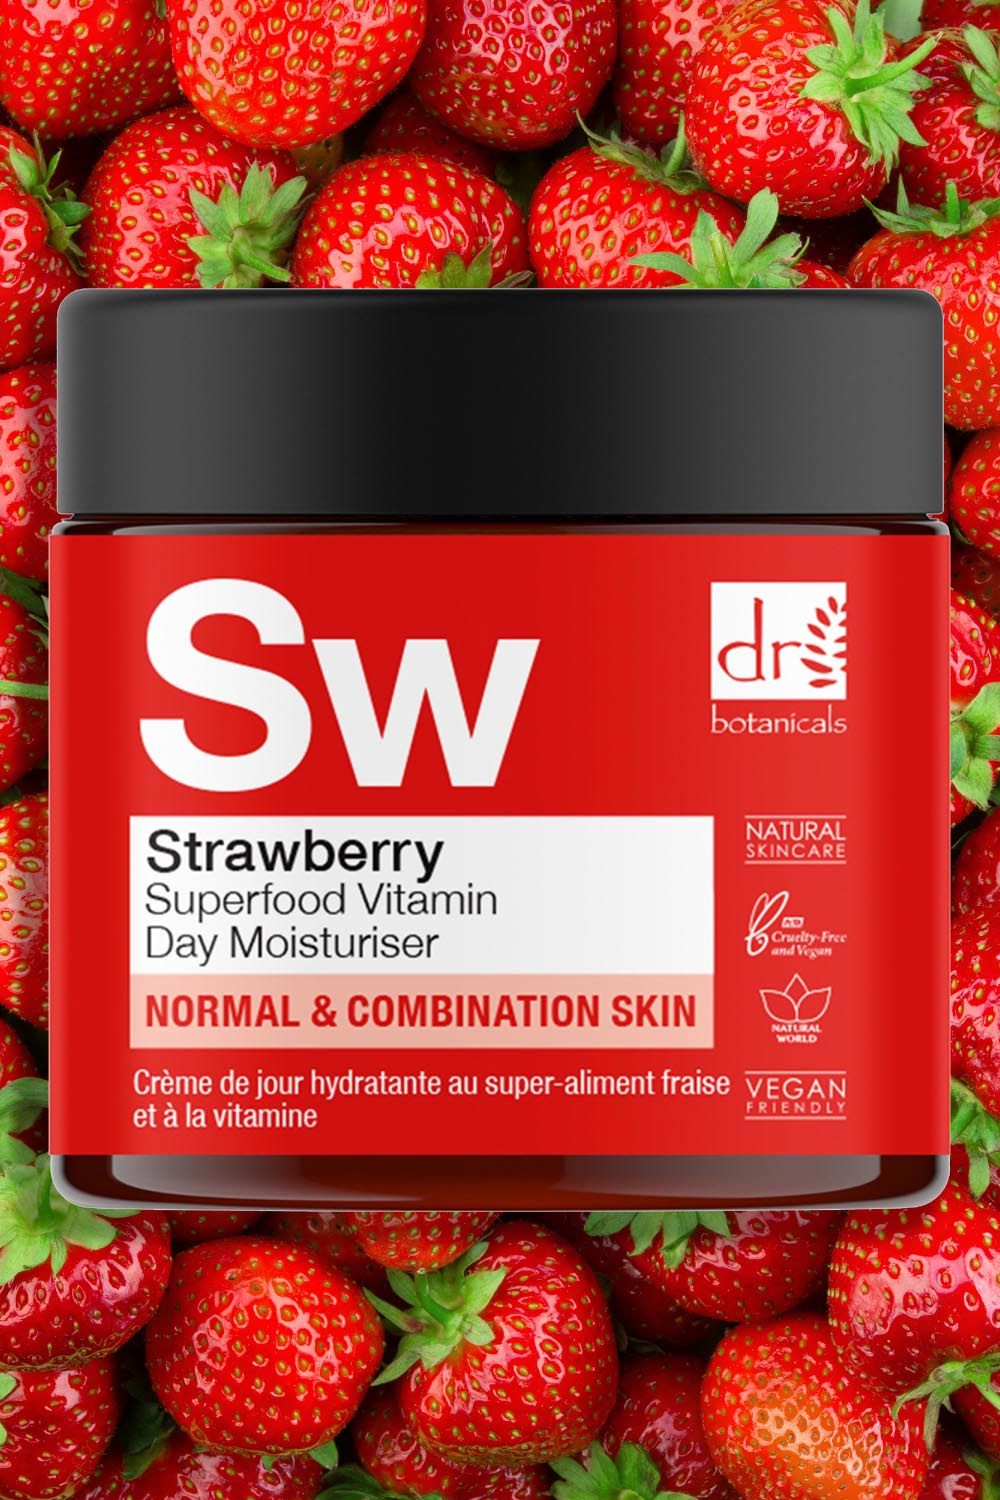 Dr Botanicals Strawberry Superfood Vitamin C Day Moisturiser